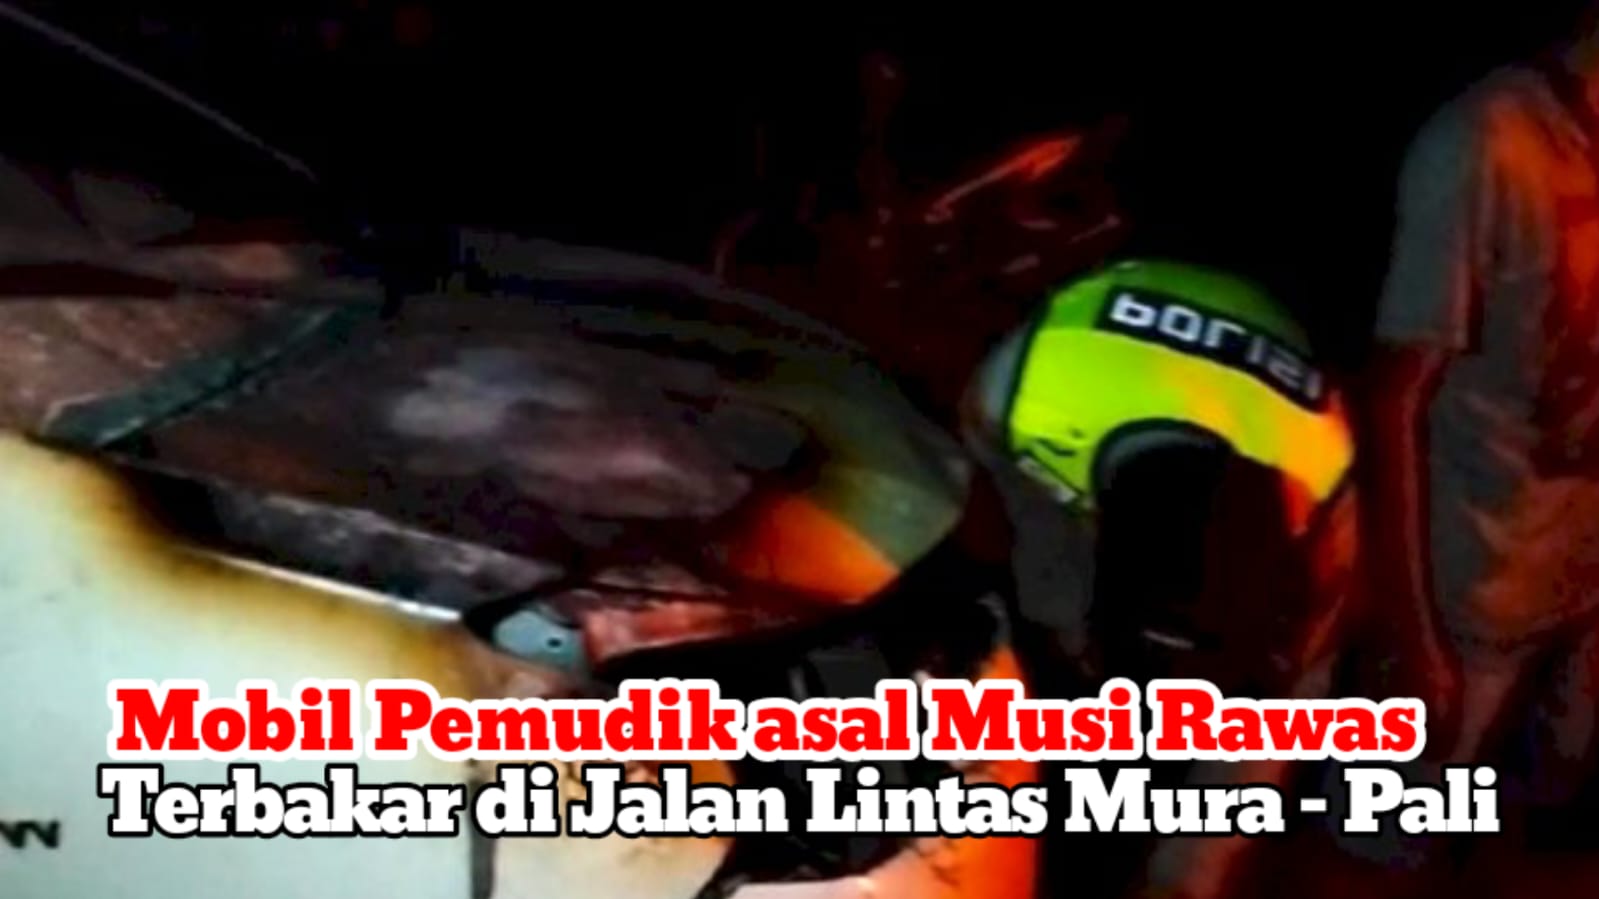 Mobil Pemudik Asal Musi Rawas Terbakar di Jalan Lintas Musi Rawas - Pali, Pulang Mudik dari Lampung